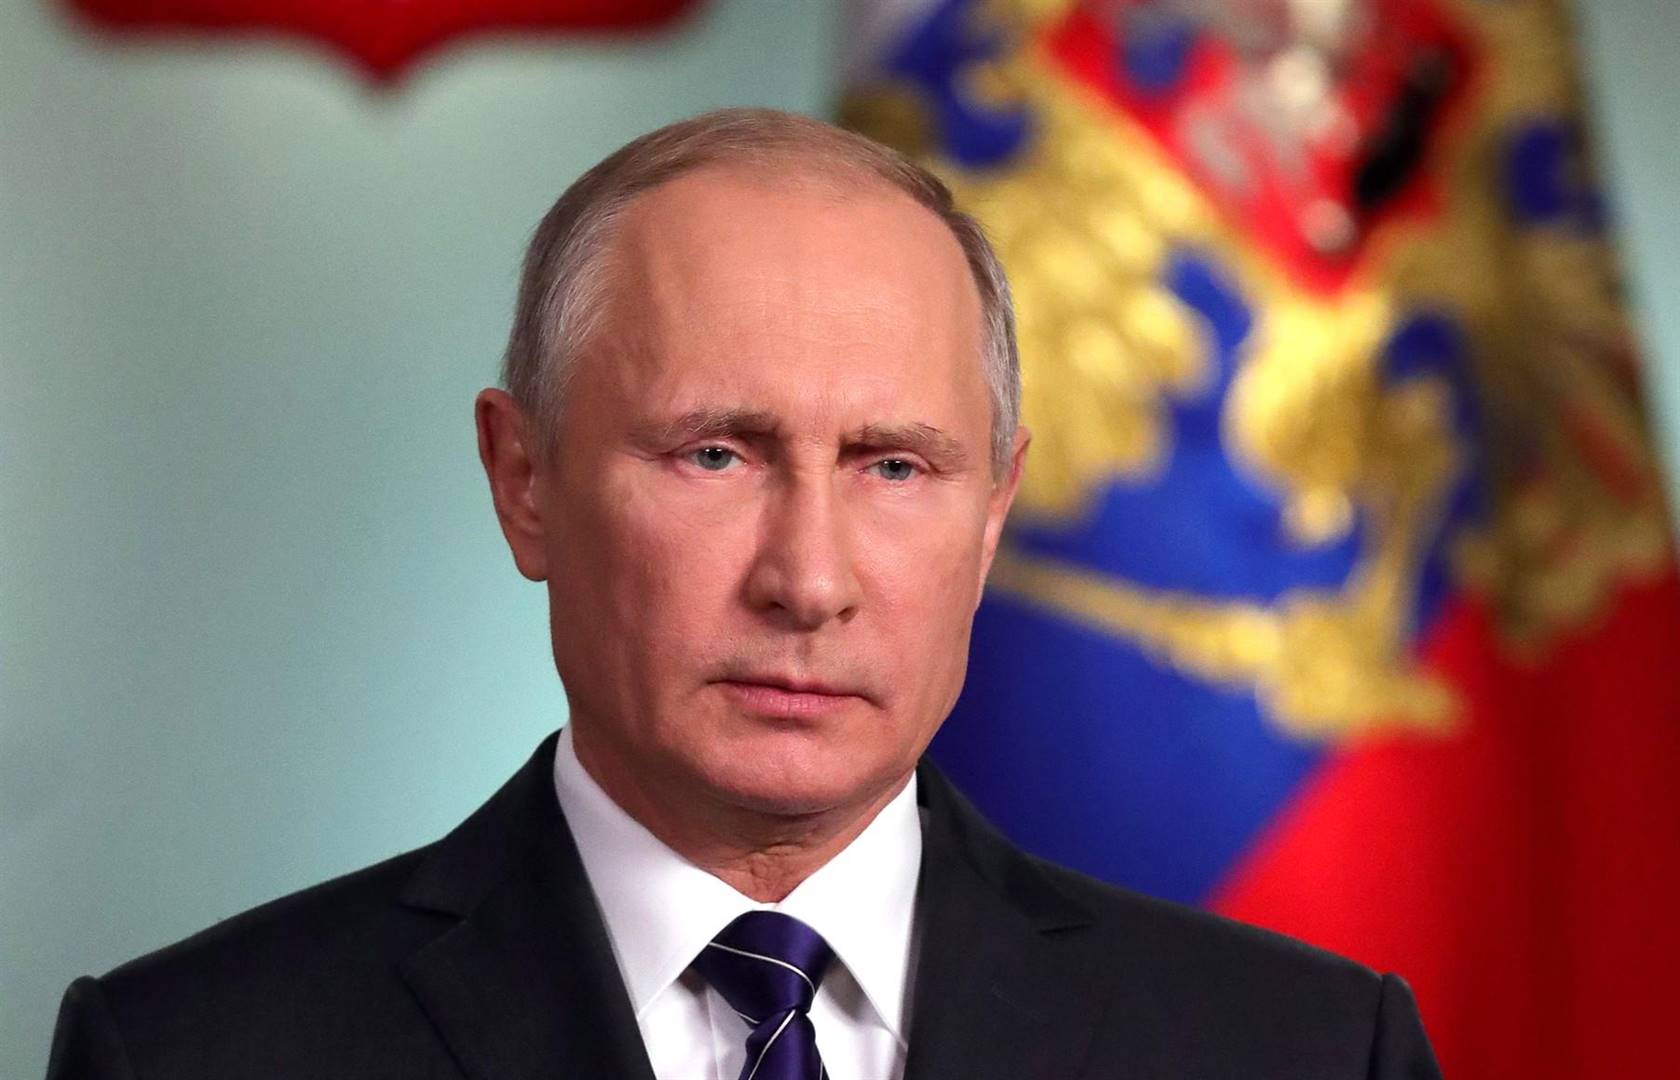 Juegos militares internacionales: Putin promete armas a «aliados, socios y contrapartes de ideas afines»